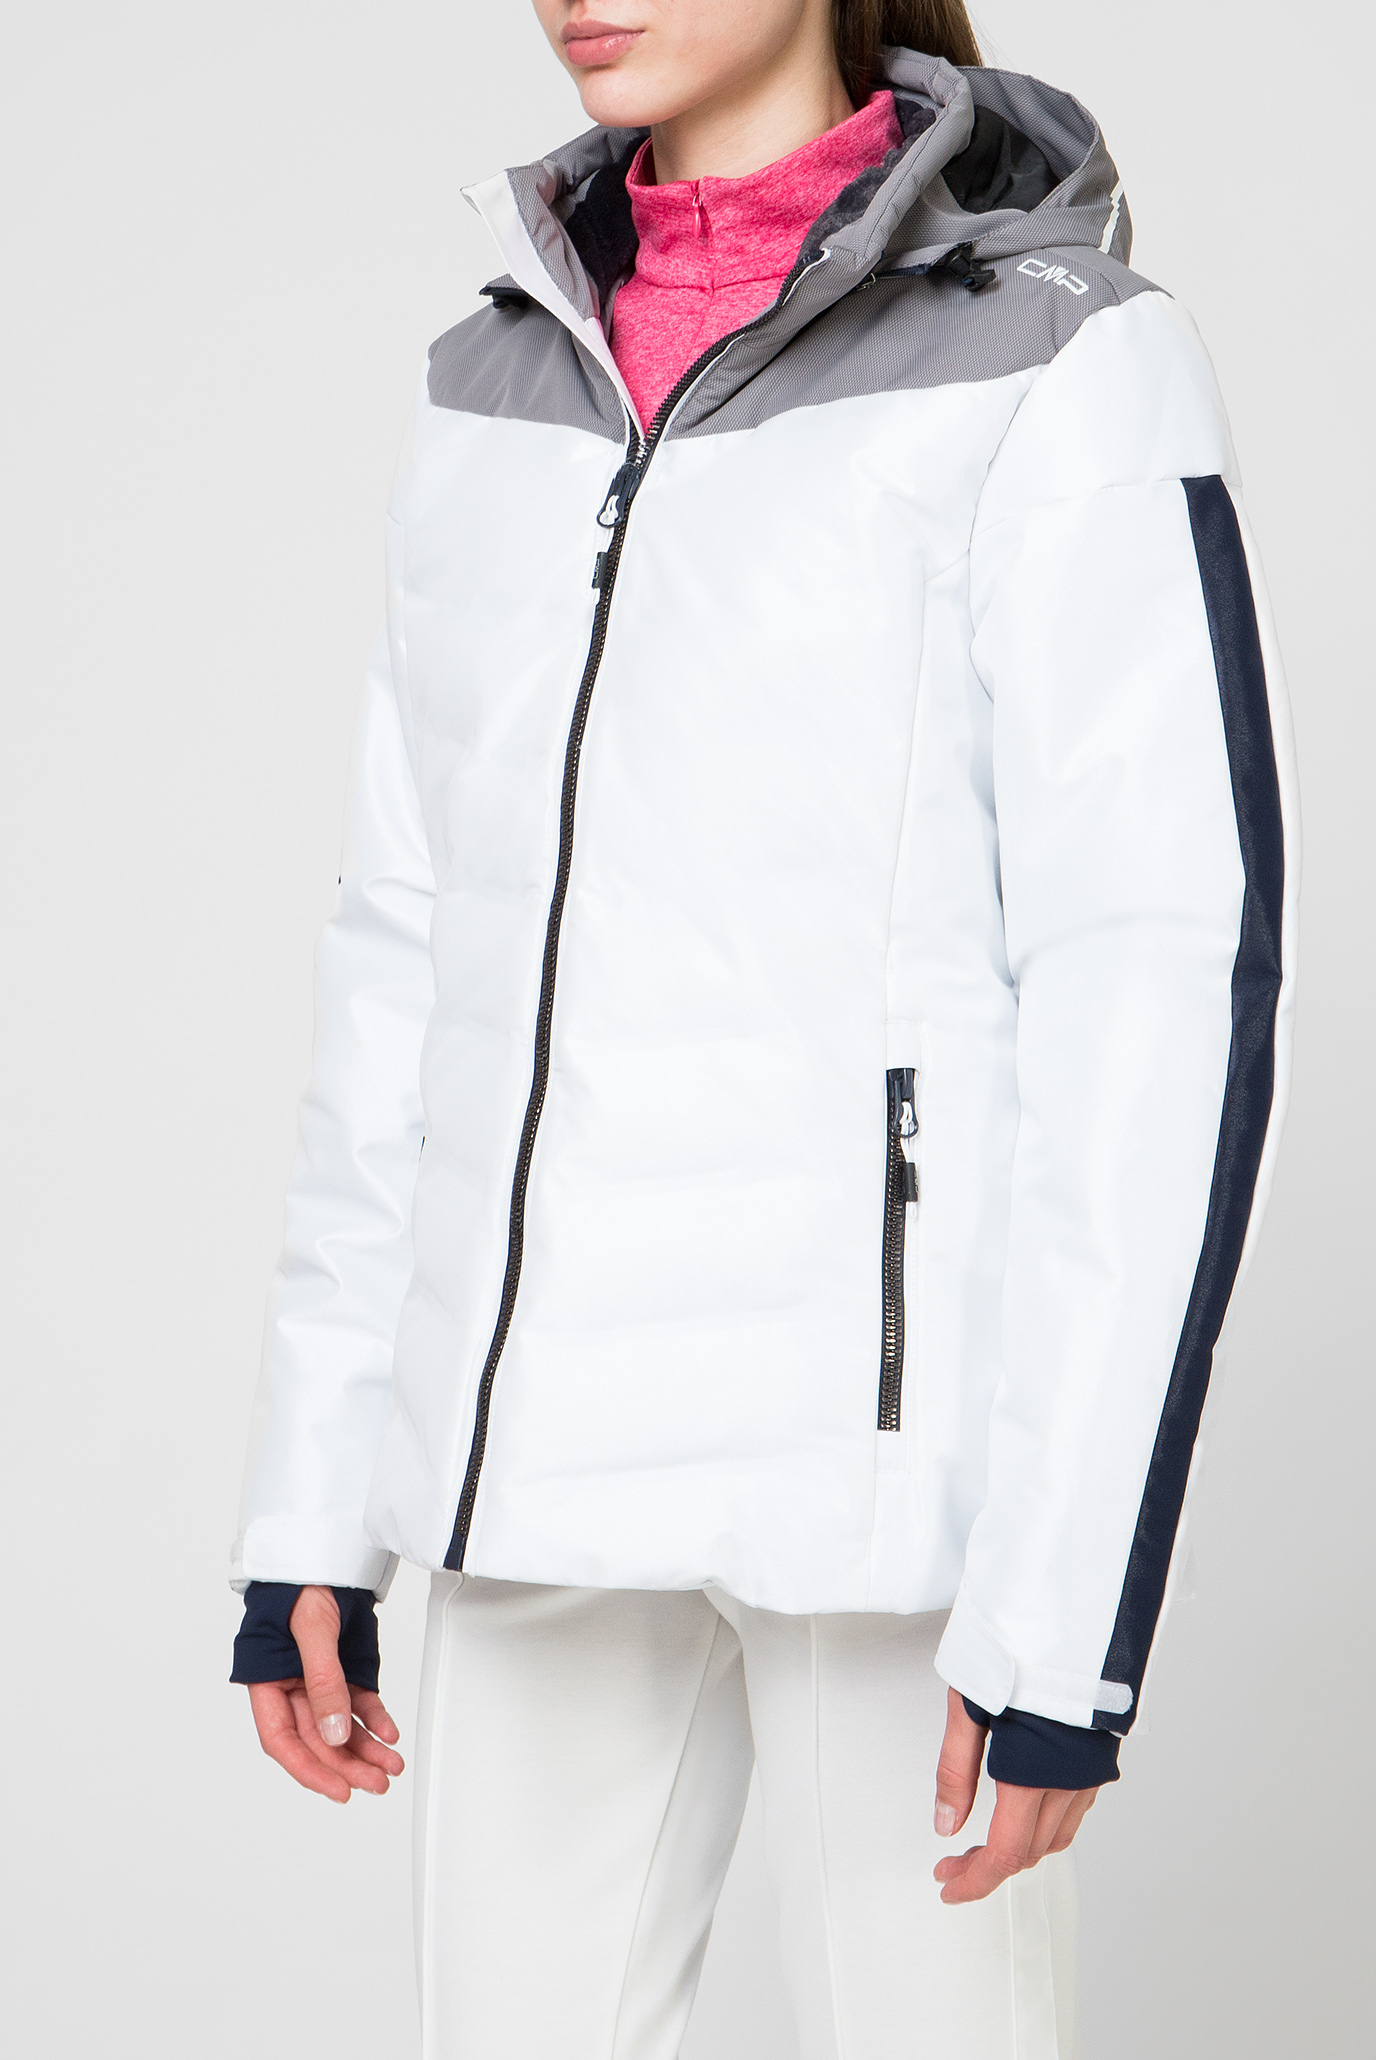 Жіноча біла лижна куртка 1